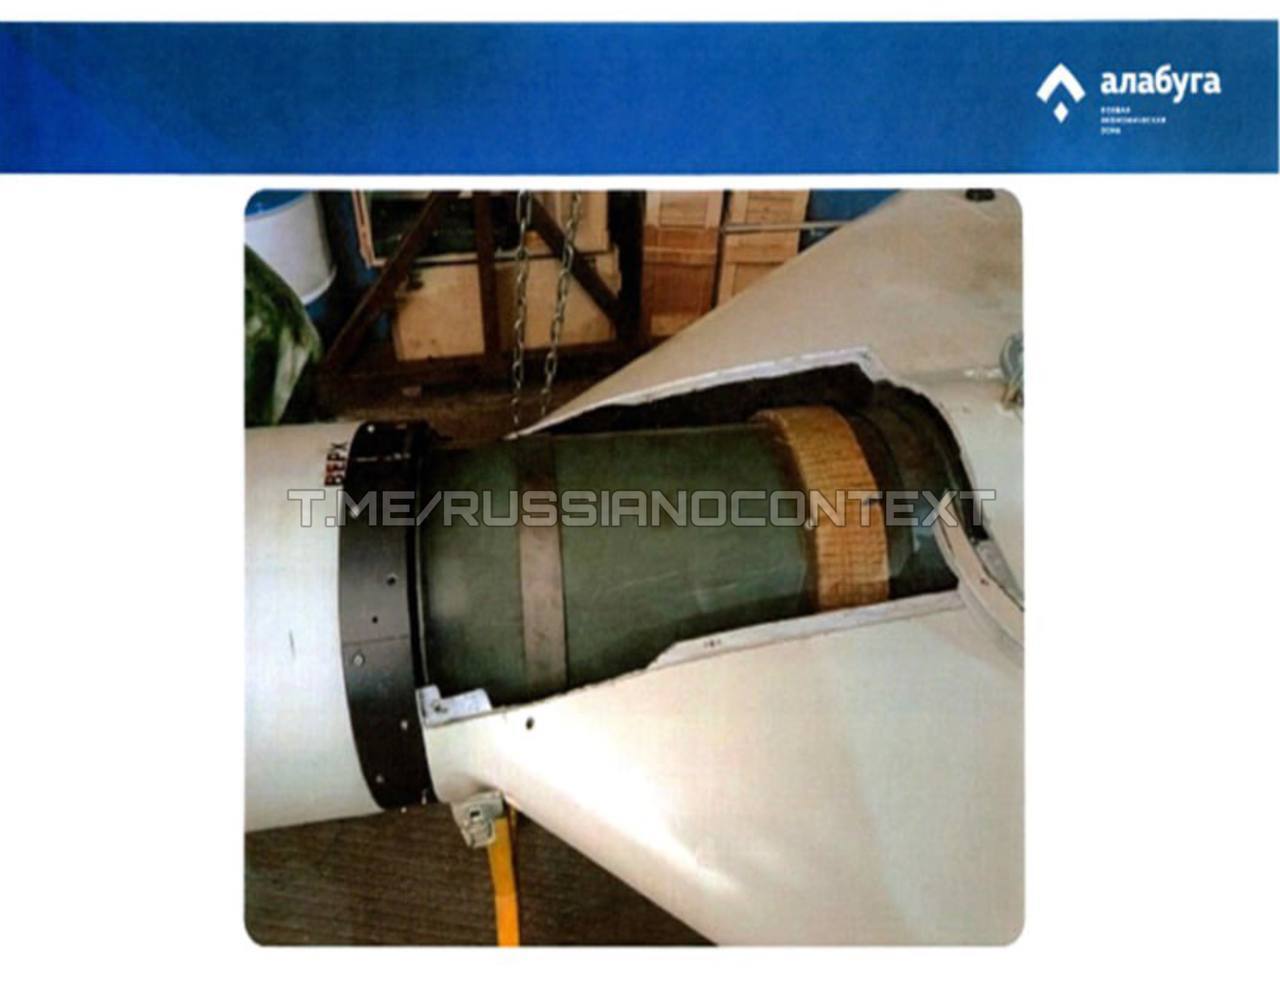 Російський безпілотник пройшов вдосконалення: бойова частина ''шахеда'' збільшена до 90 кг